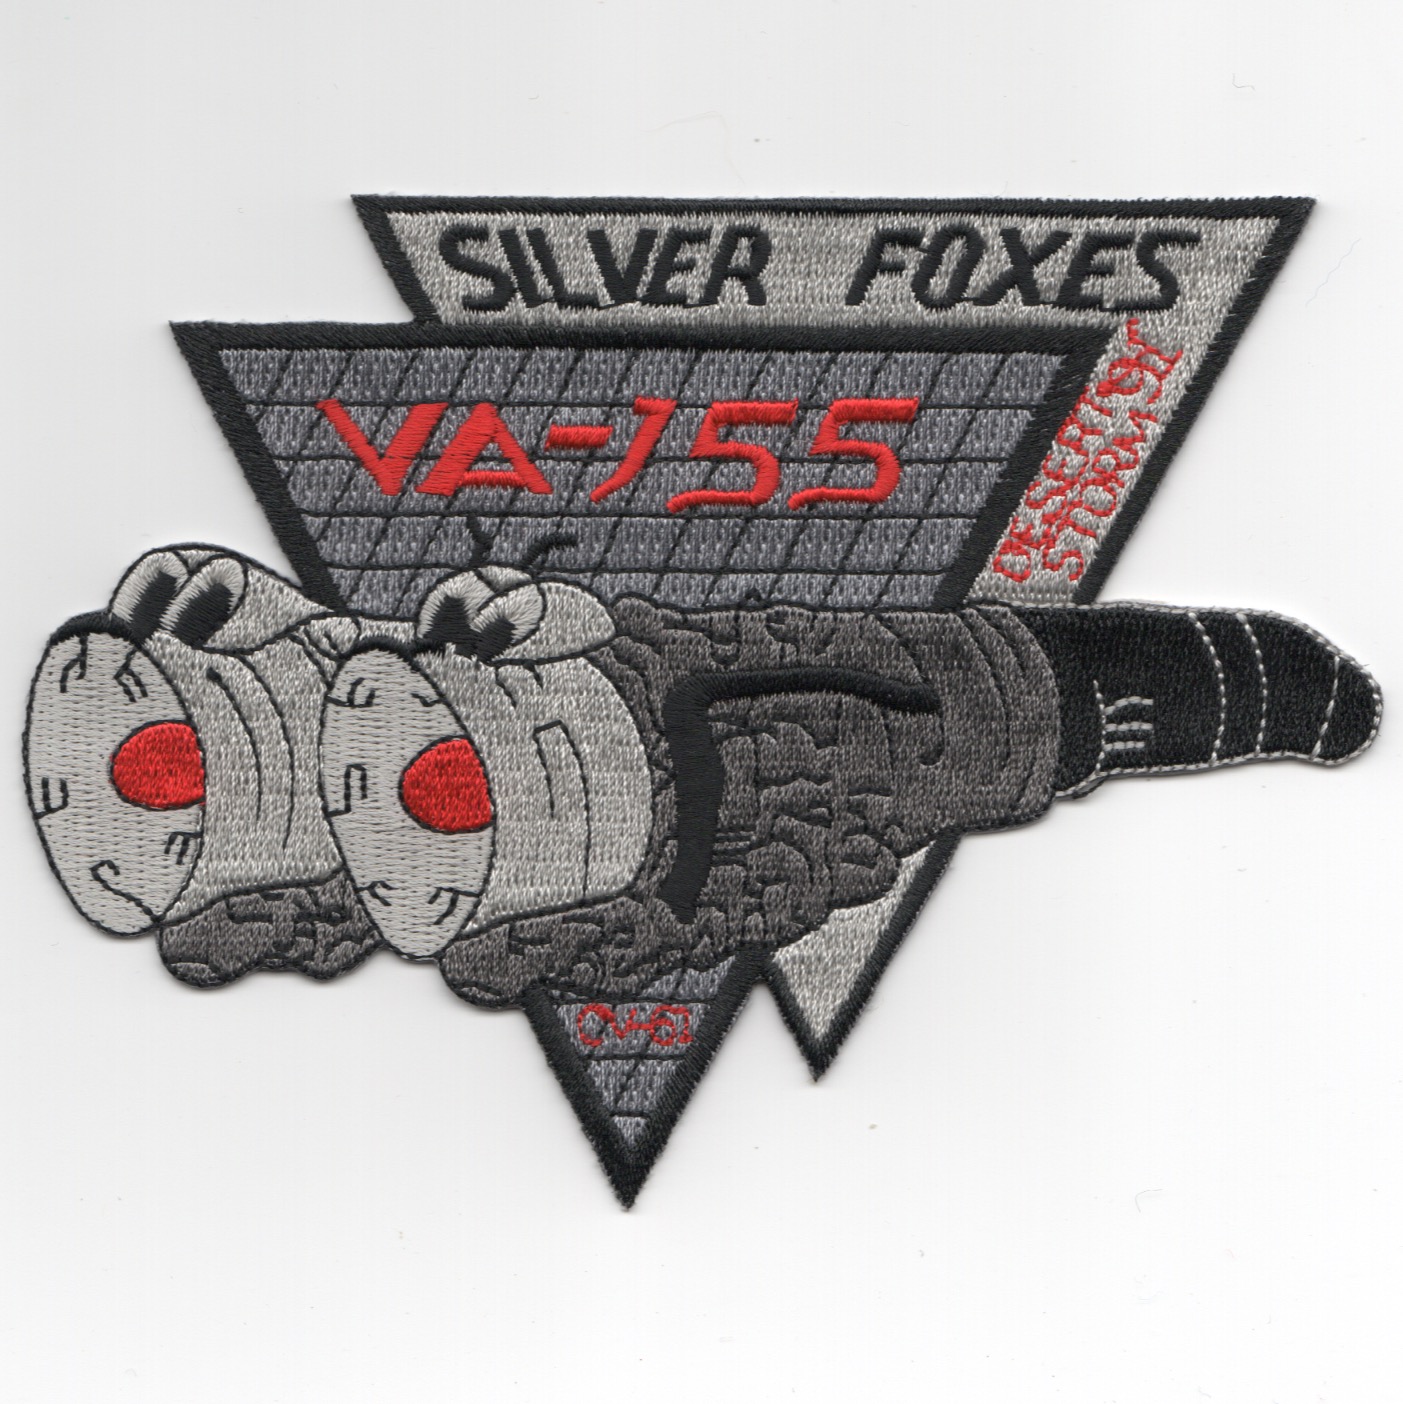 VA-155 'SILVER FOX' / ODS (Repro)